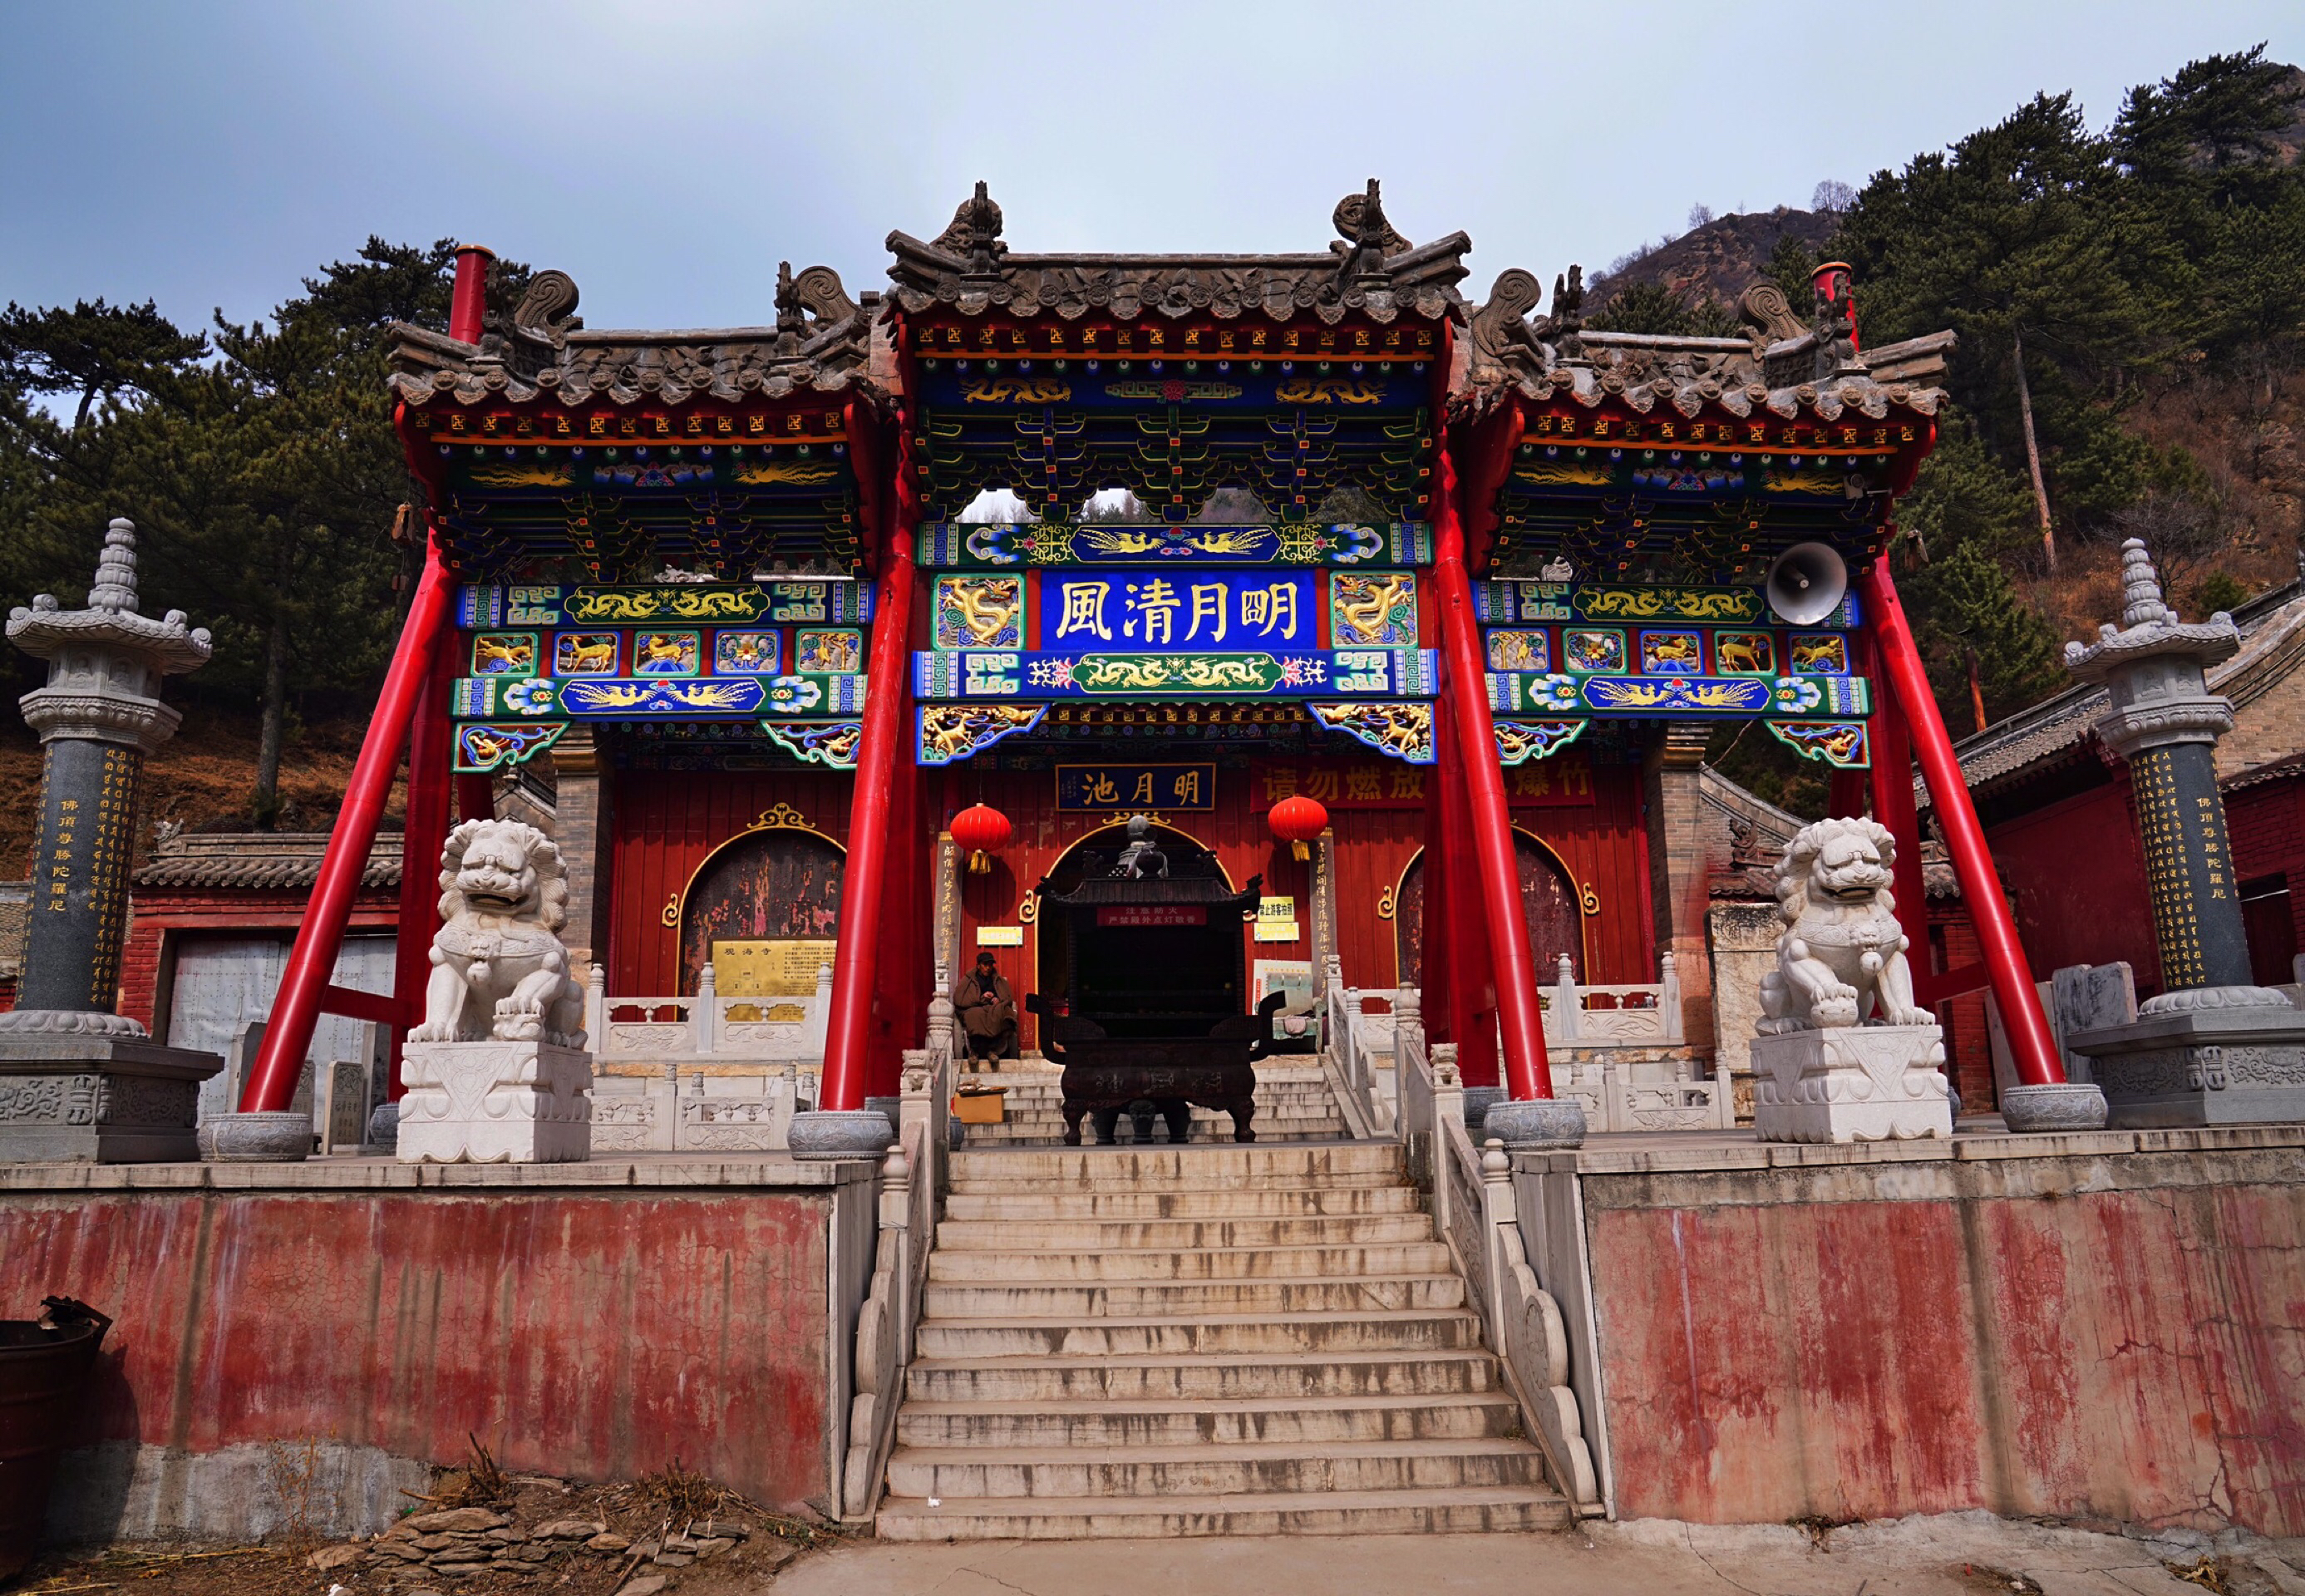 63张图片五台山观海寺亦称明月池,该寺创建于北魏,属五台山历史悠久的